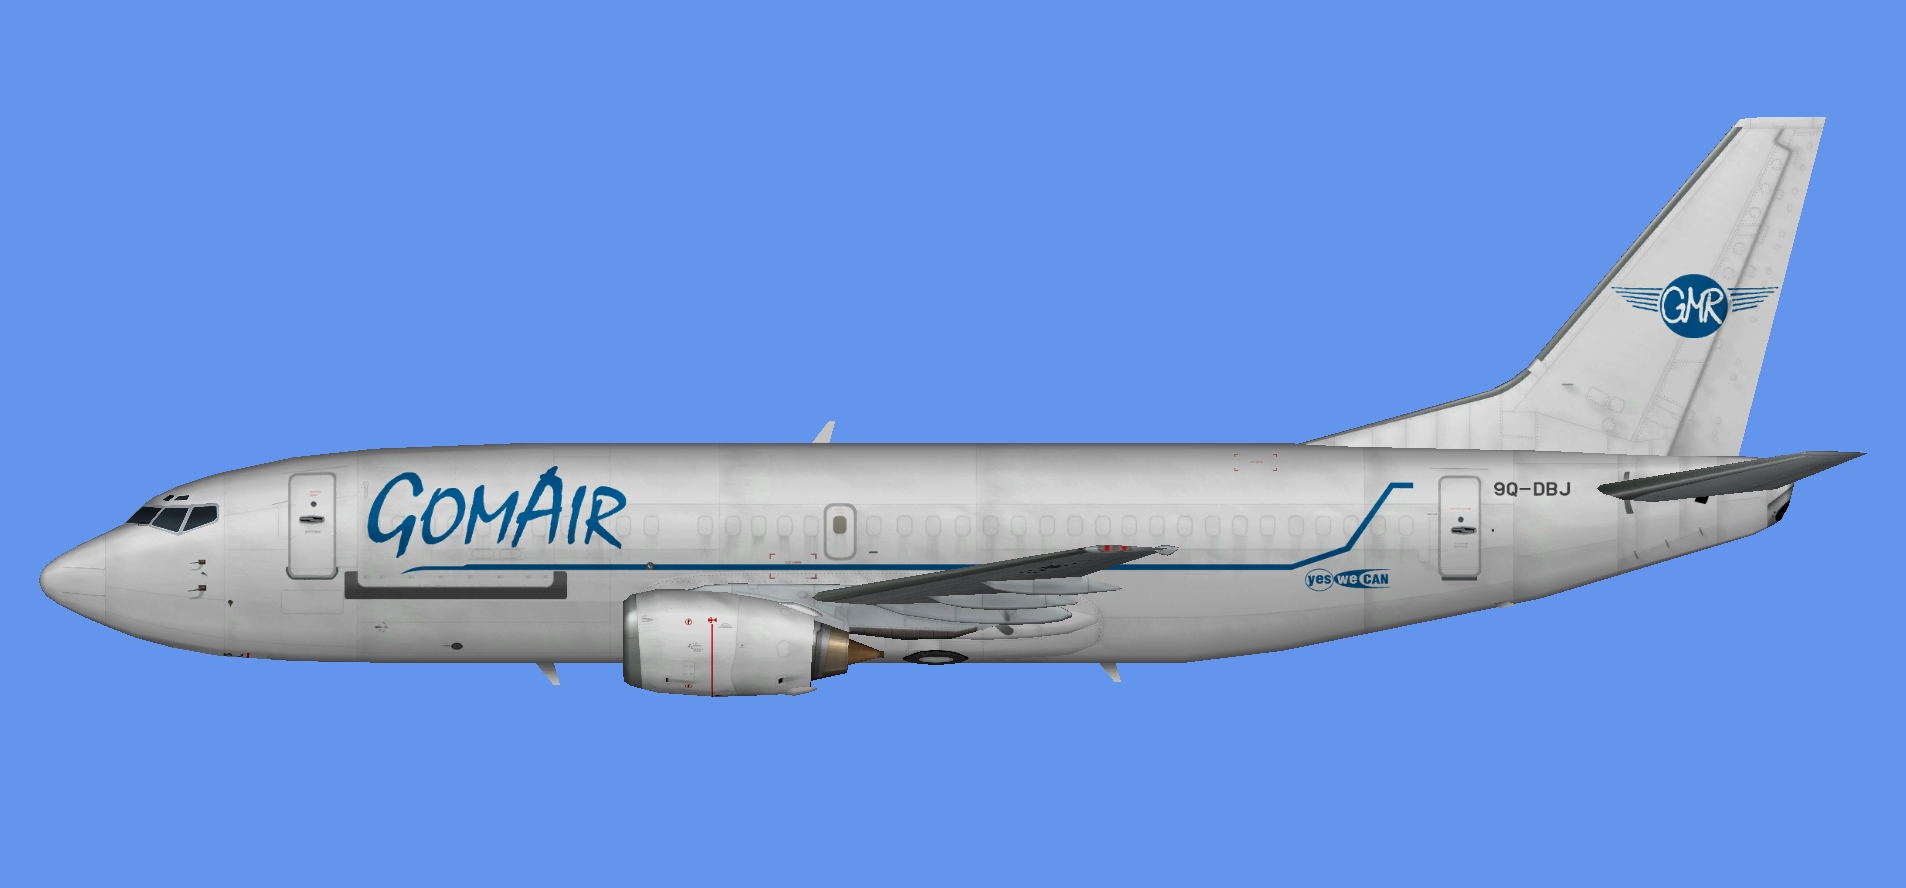 Gomair Boeing 737-300F